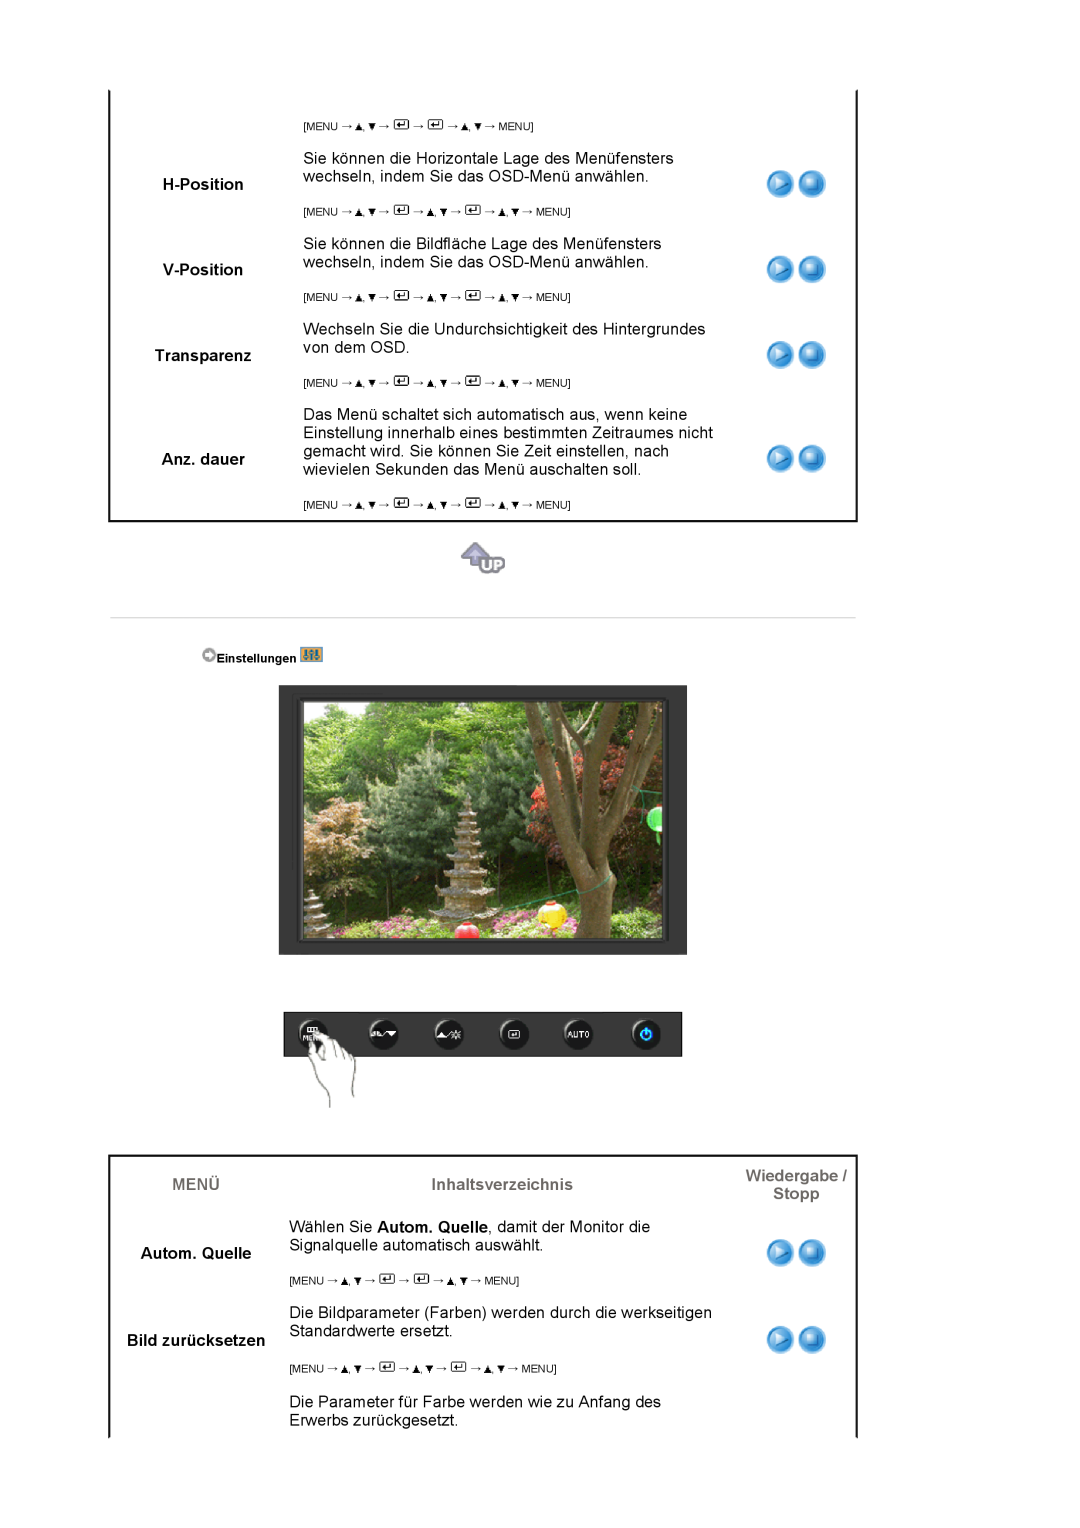 Samsung LS19HAWCSH/EDC, LS19HAWCSQ/EDC manual H-Position V-Position Transparenz Anz. dauer, Autom. Quelle Bild zurücksetzen 